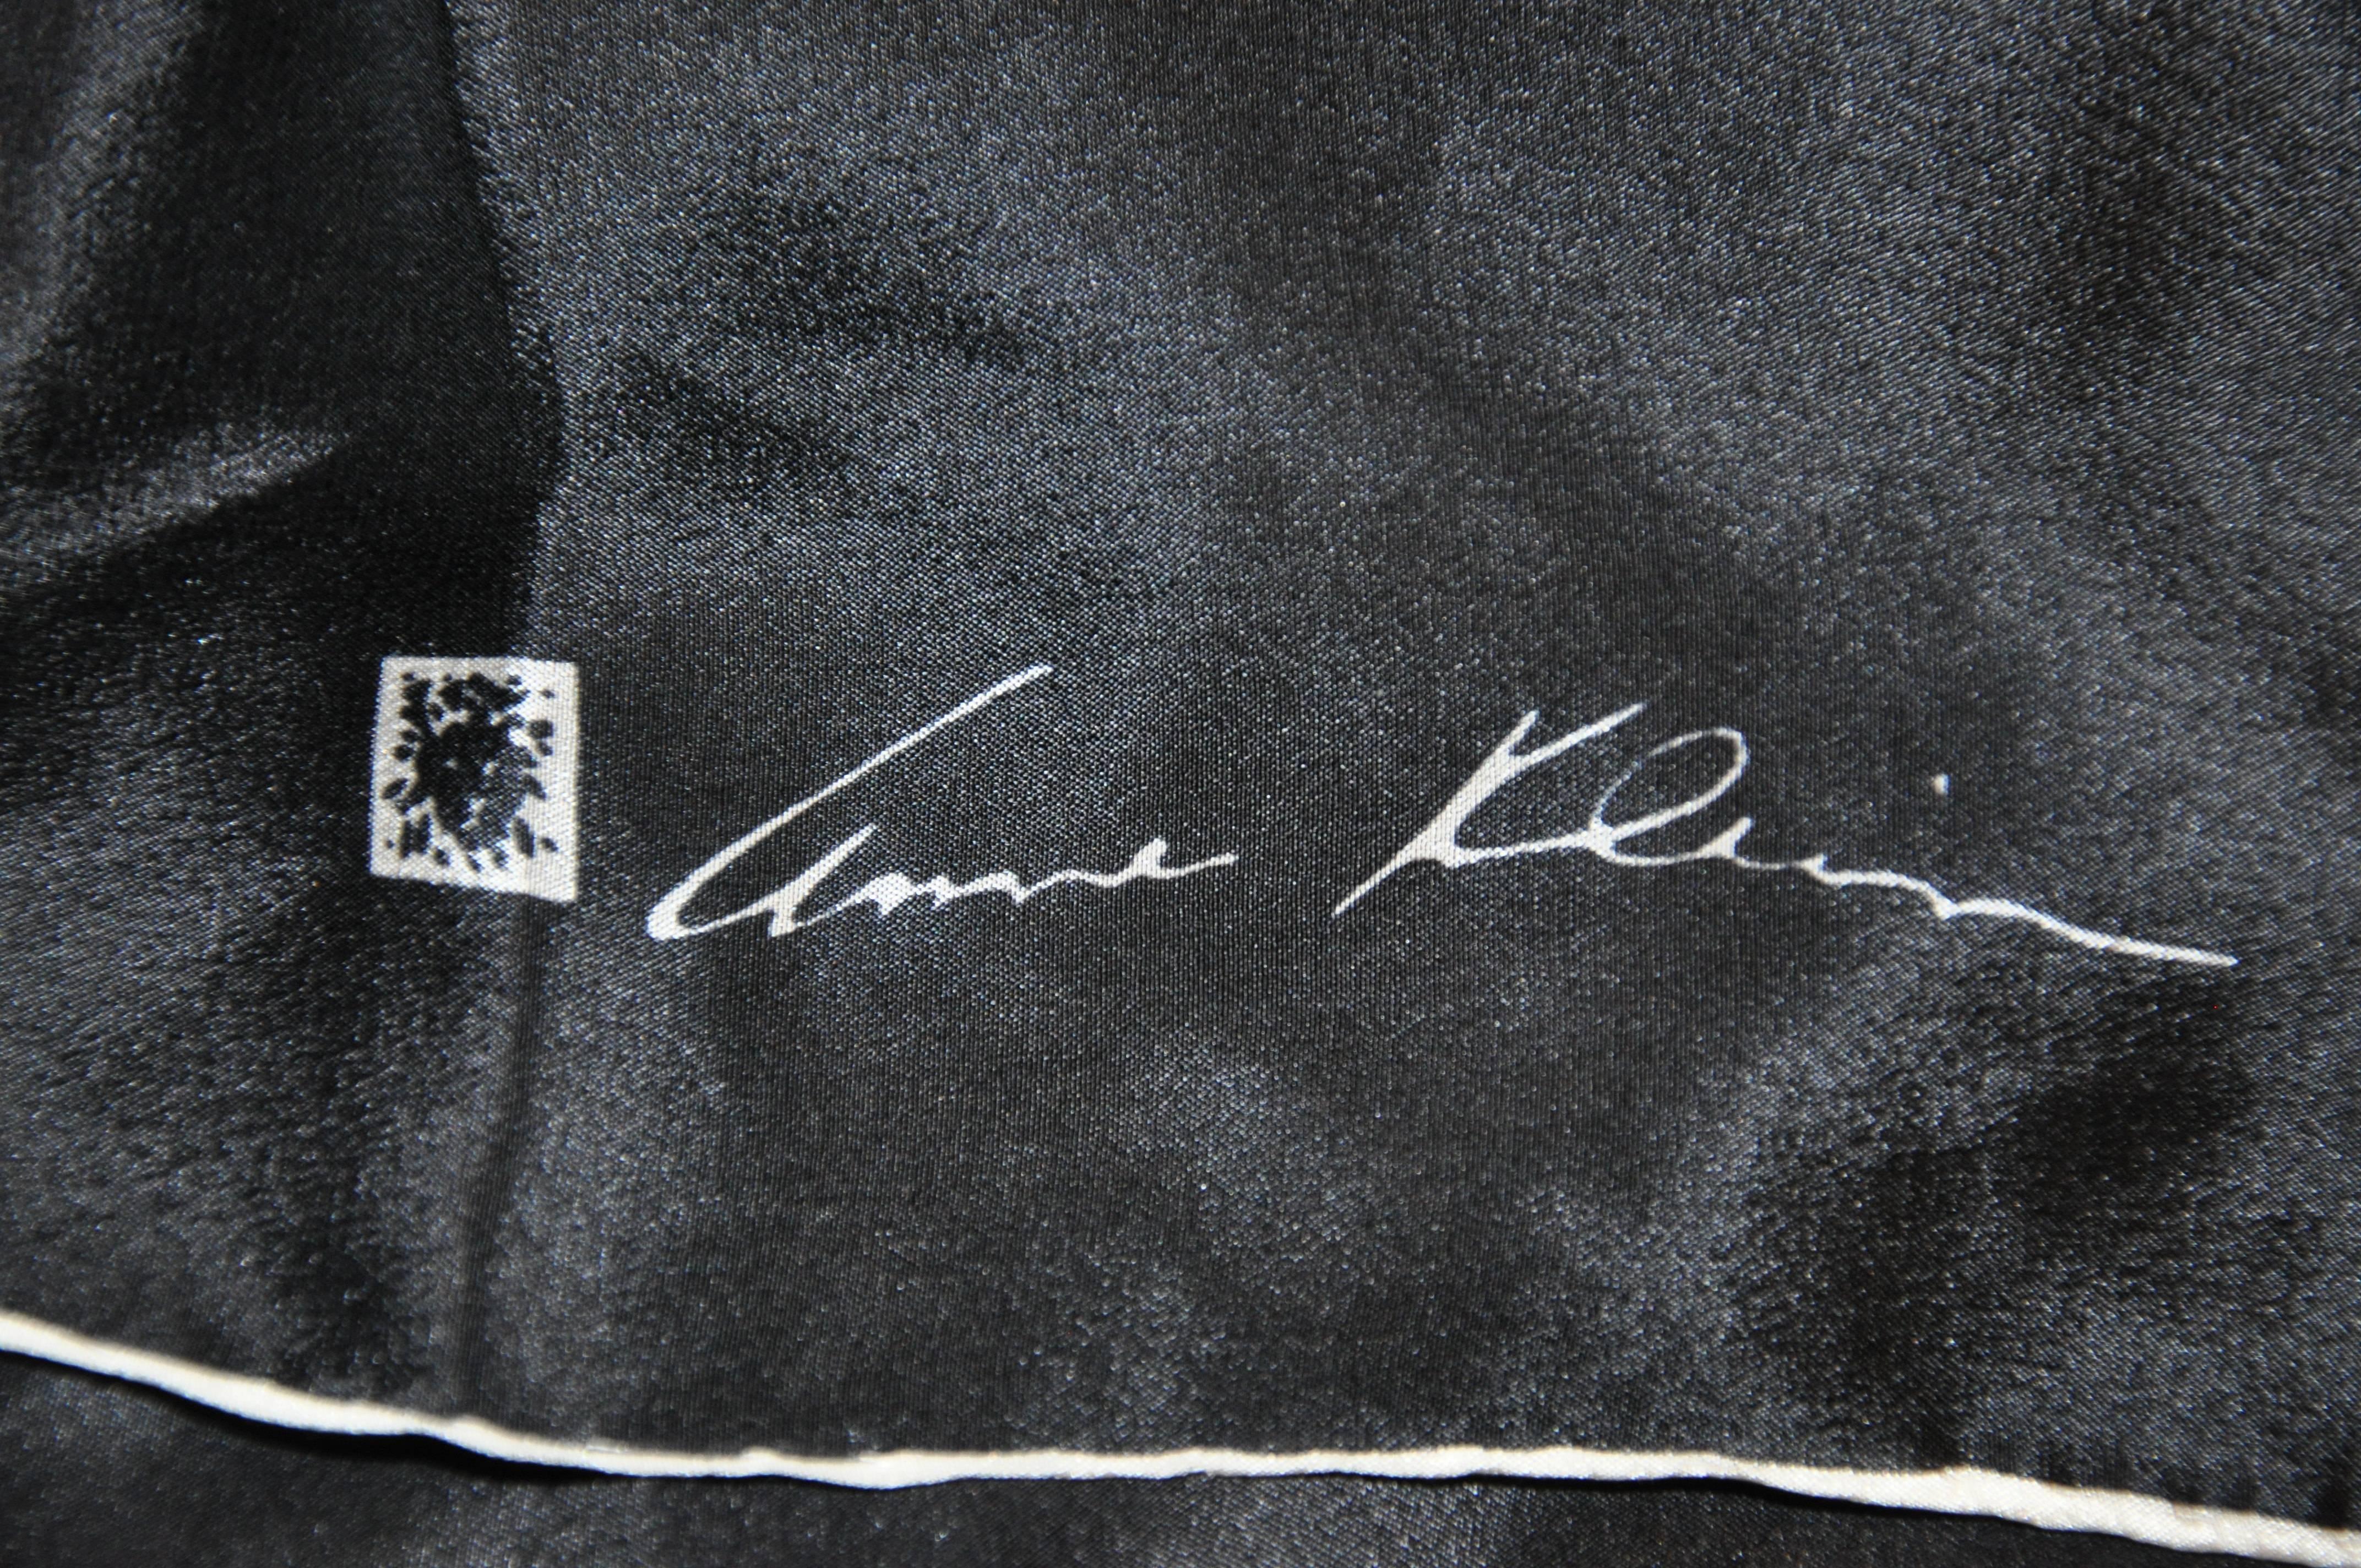         Anne Klein wonderful jet-black silk scarf measures 20